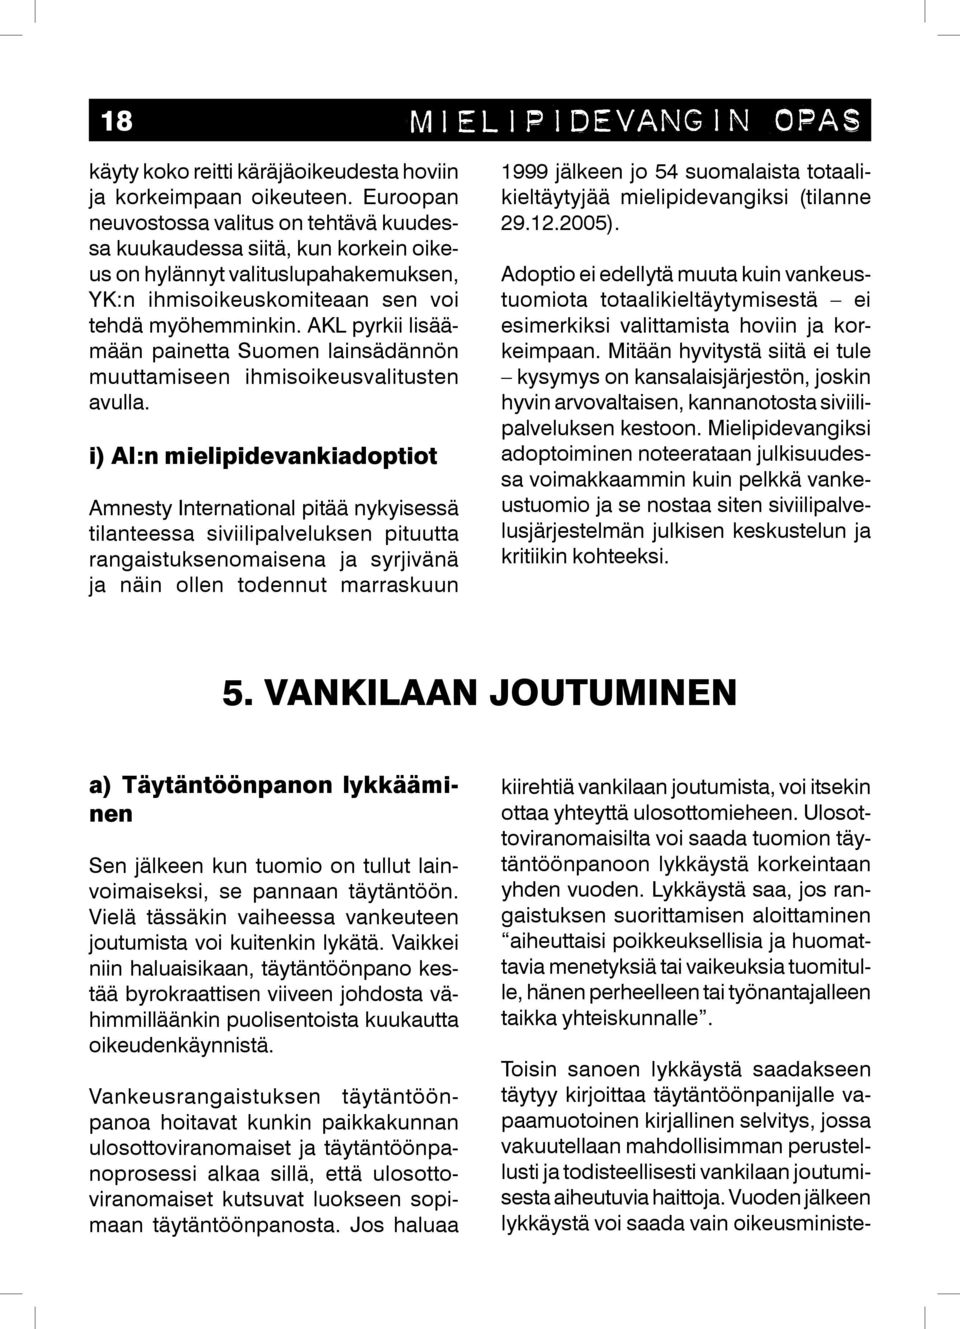 AKL pyrkii lisäämään painetta Suomen lainsädännön muuttamiseen ihmisoikeusvalitusten avulla.